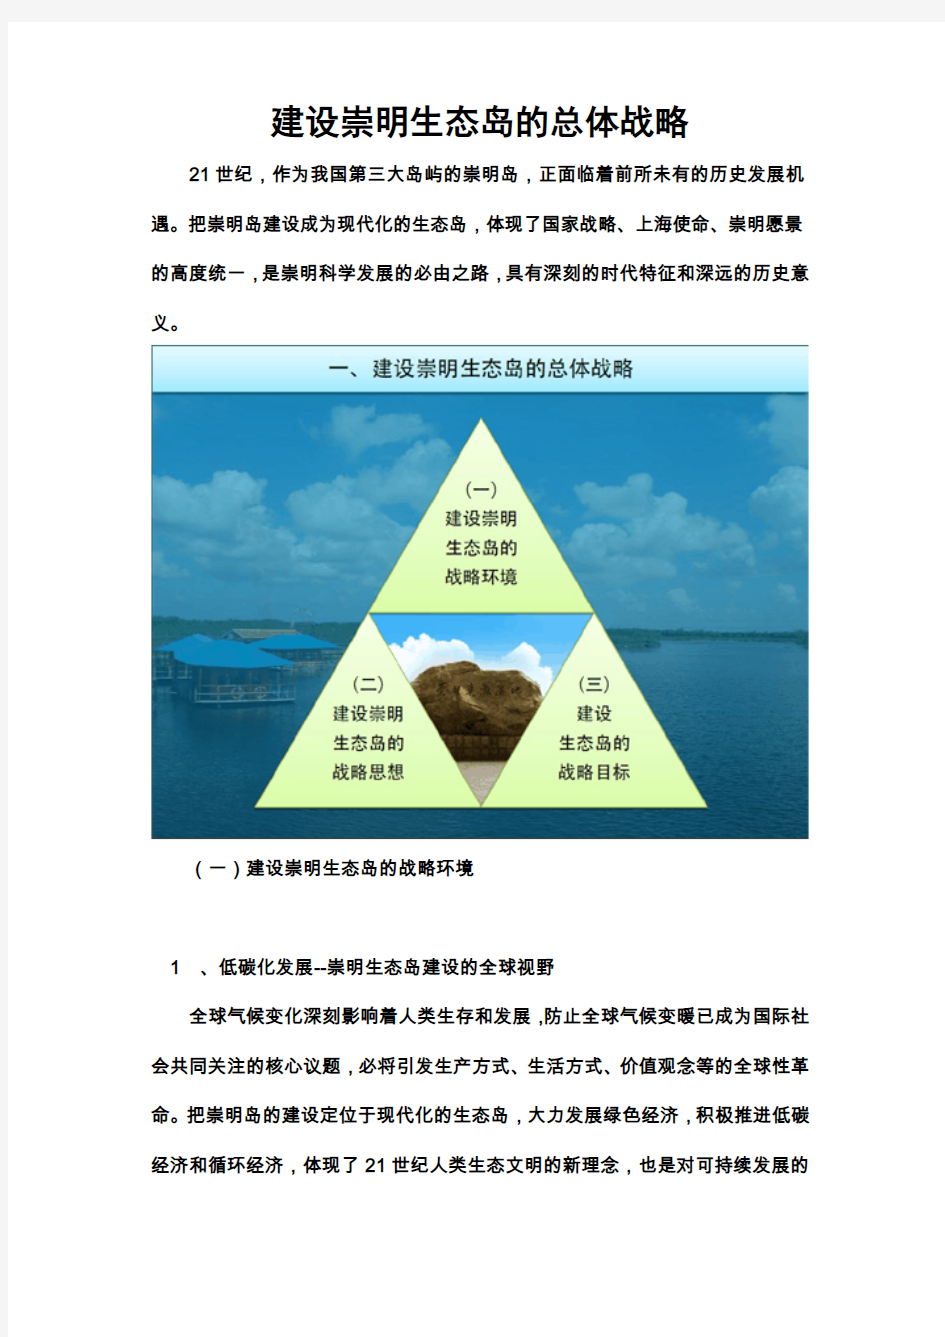 崇明生态岛建设纲要(2010-2020年)-建设崇明生态岛的总体战略